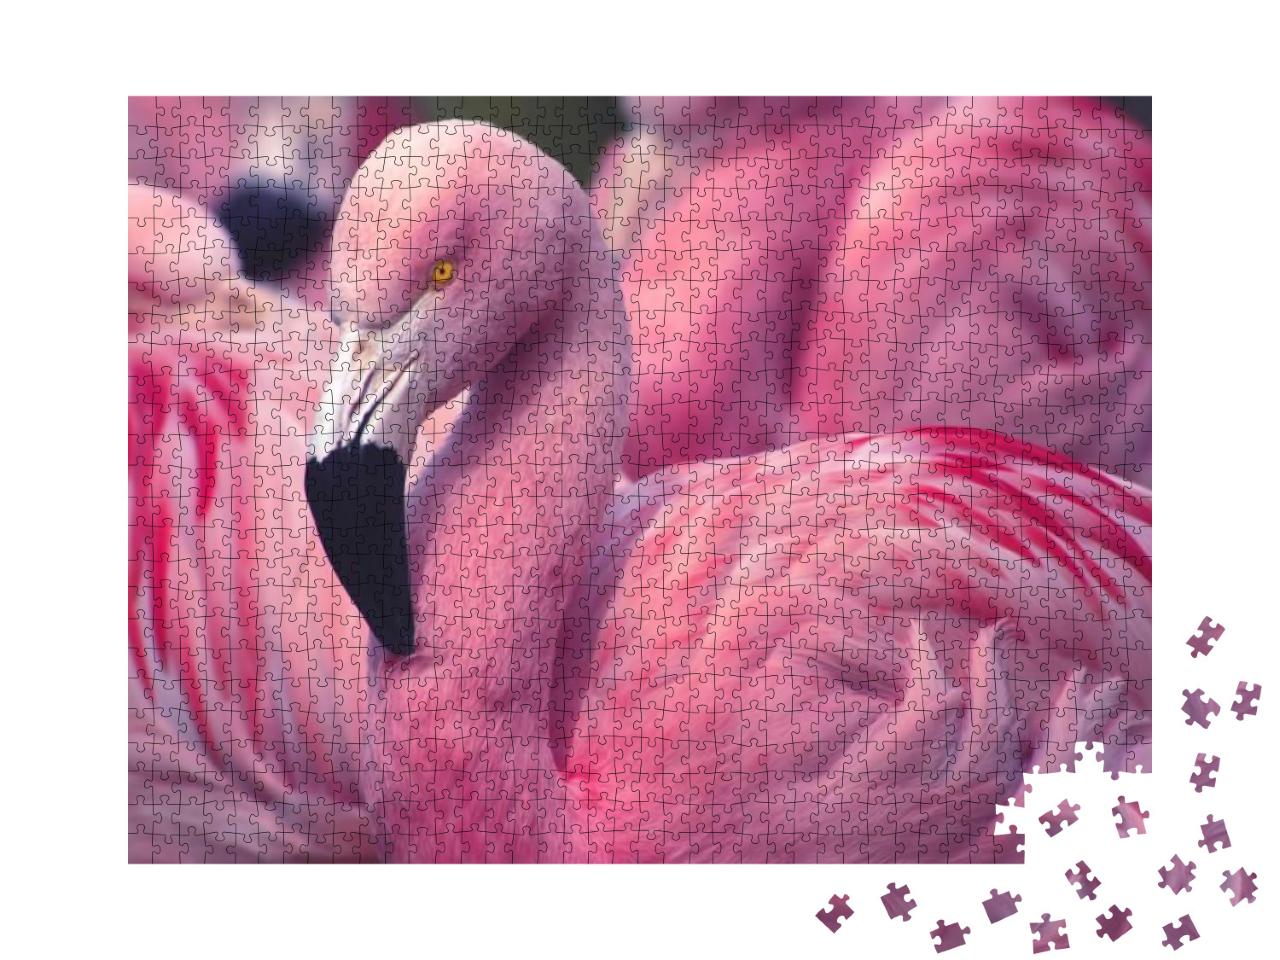 Puzzle 1000 Teile „Flamingo aus Chile“